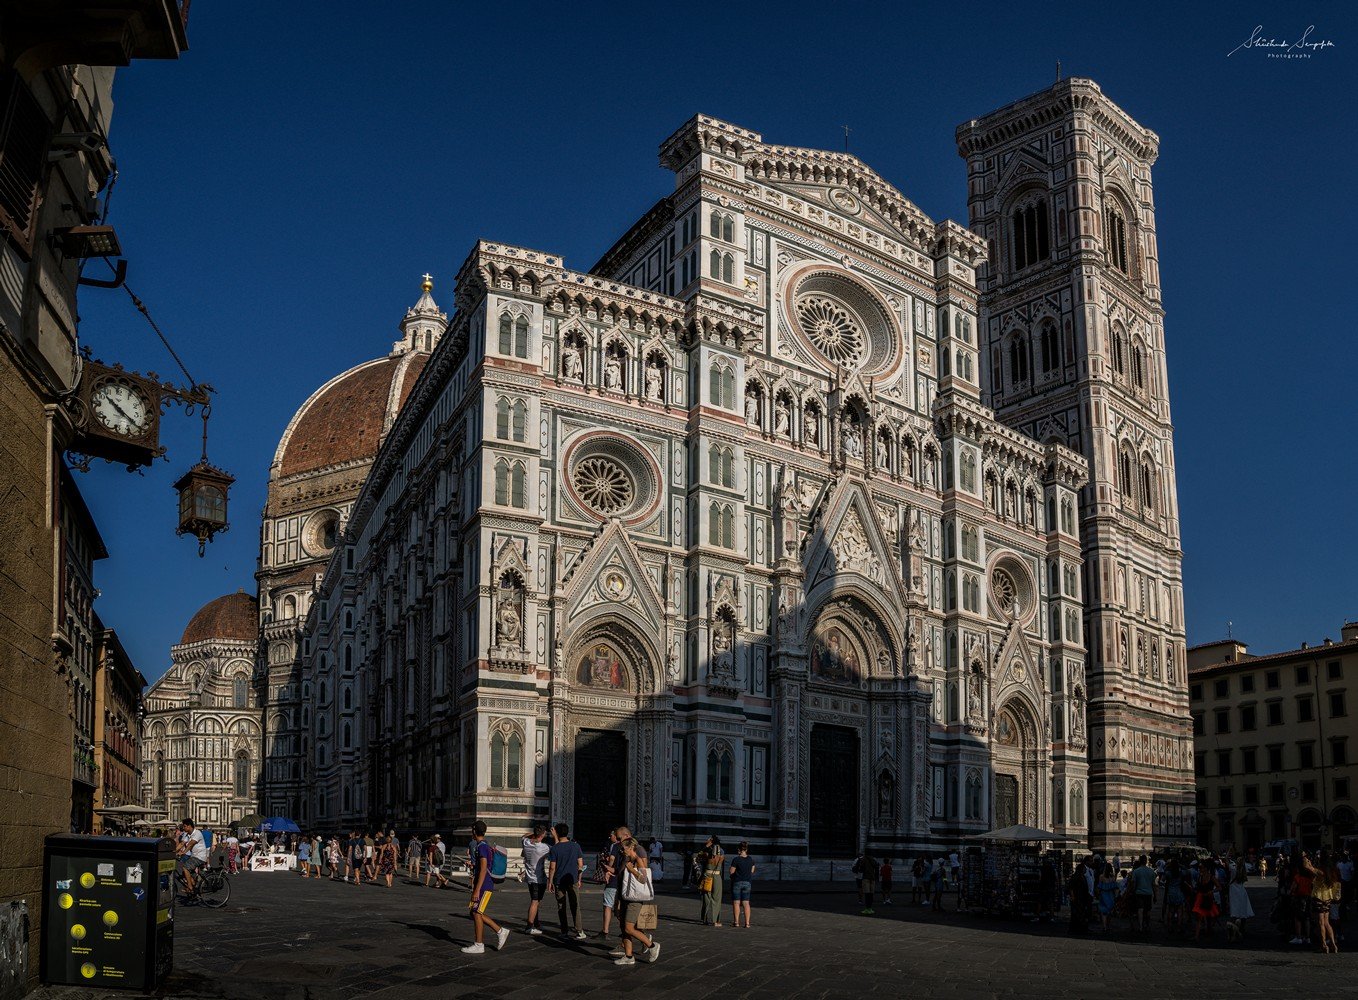 Basilica di Santa Maria del Fiore Il Duomo di Firenze at Piazza del Duomo and Piazza di San Giovanni in florence tuscany italy shot during summer